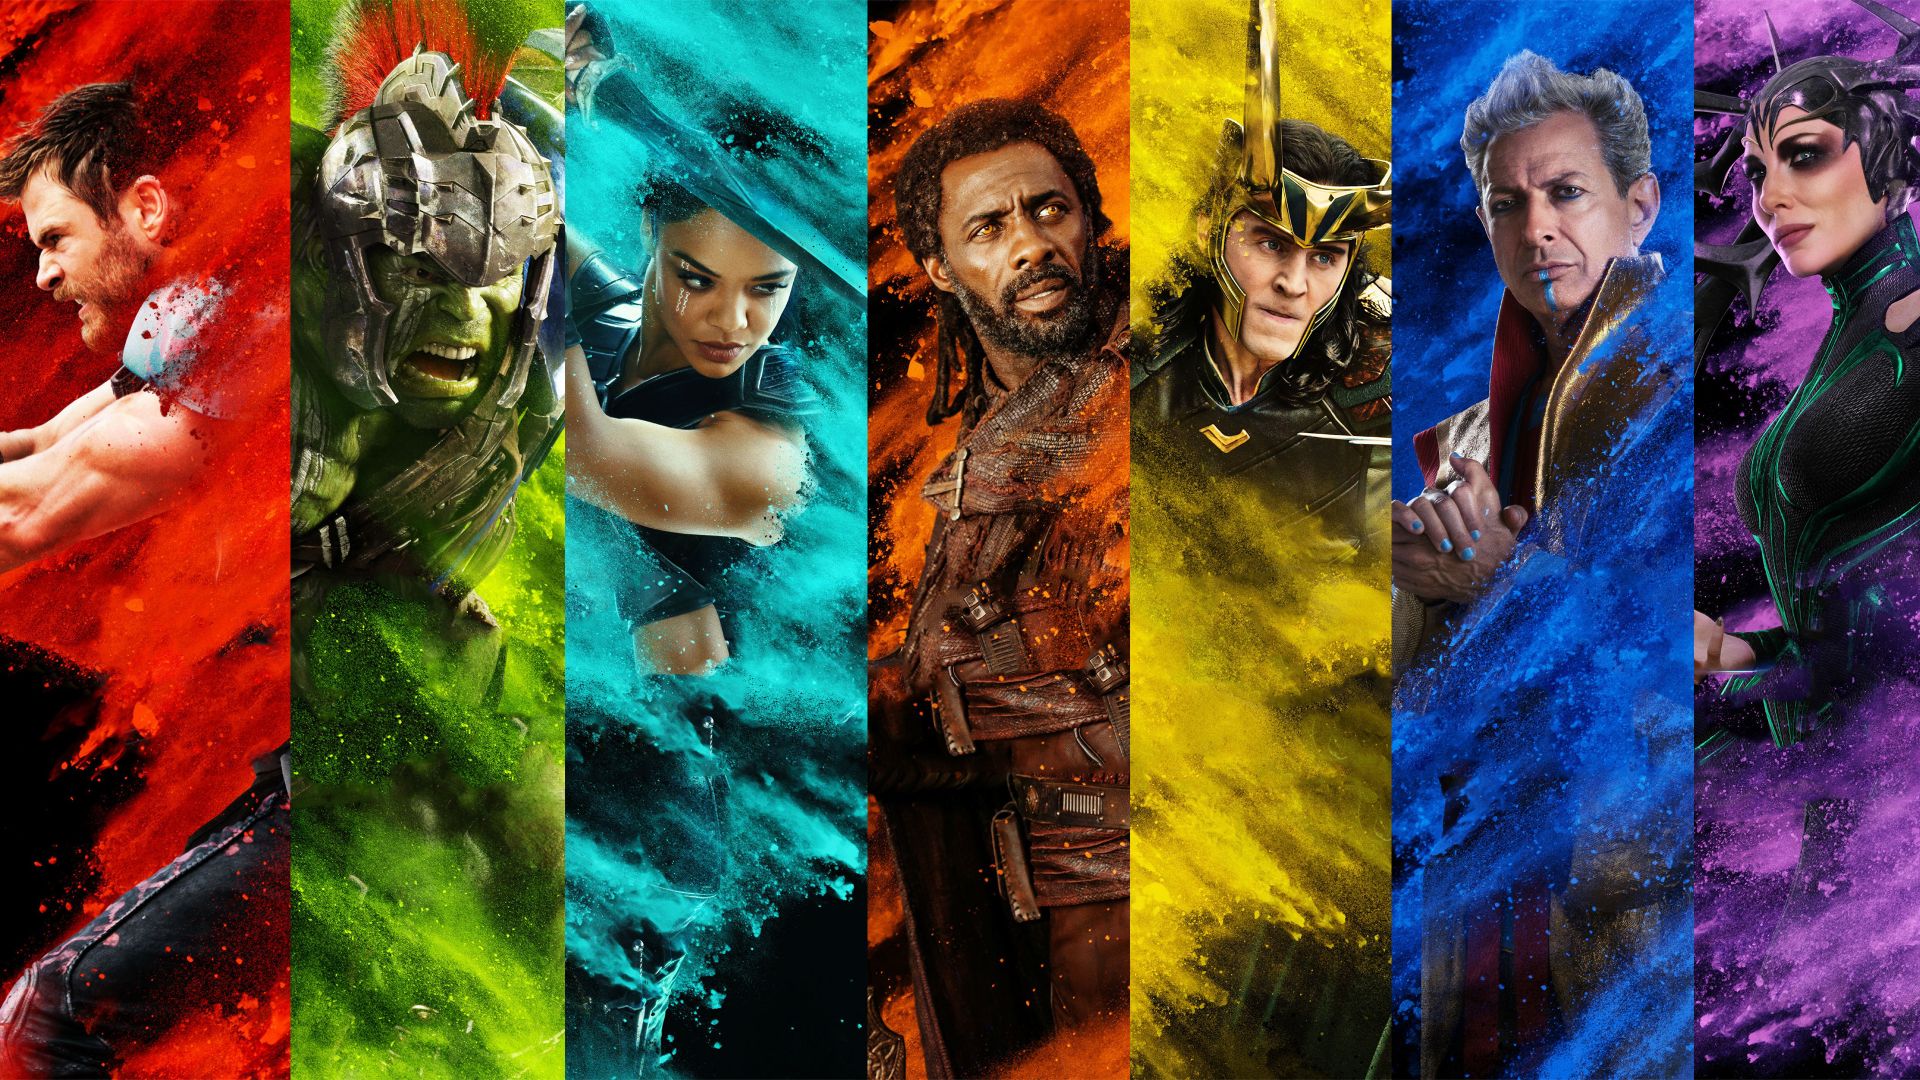 Тор 3: Рагнарек, Thor: Ragnarok, Chris Hemsworth, poster, 4k (horizontal)